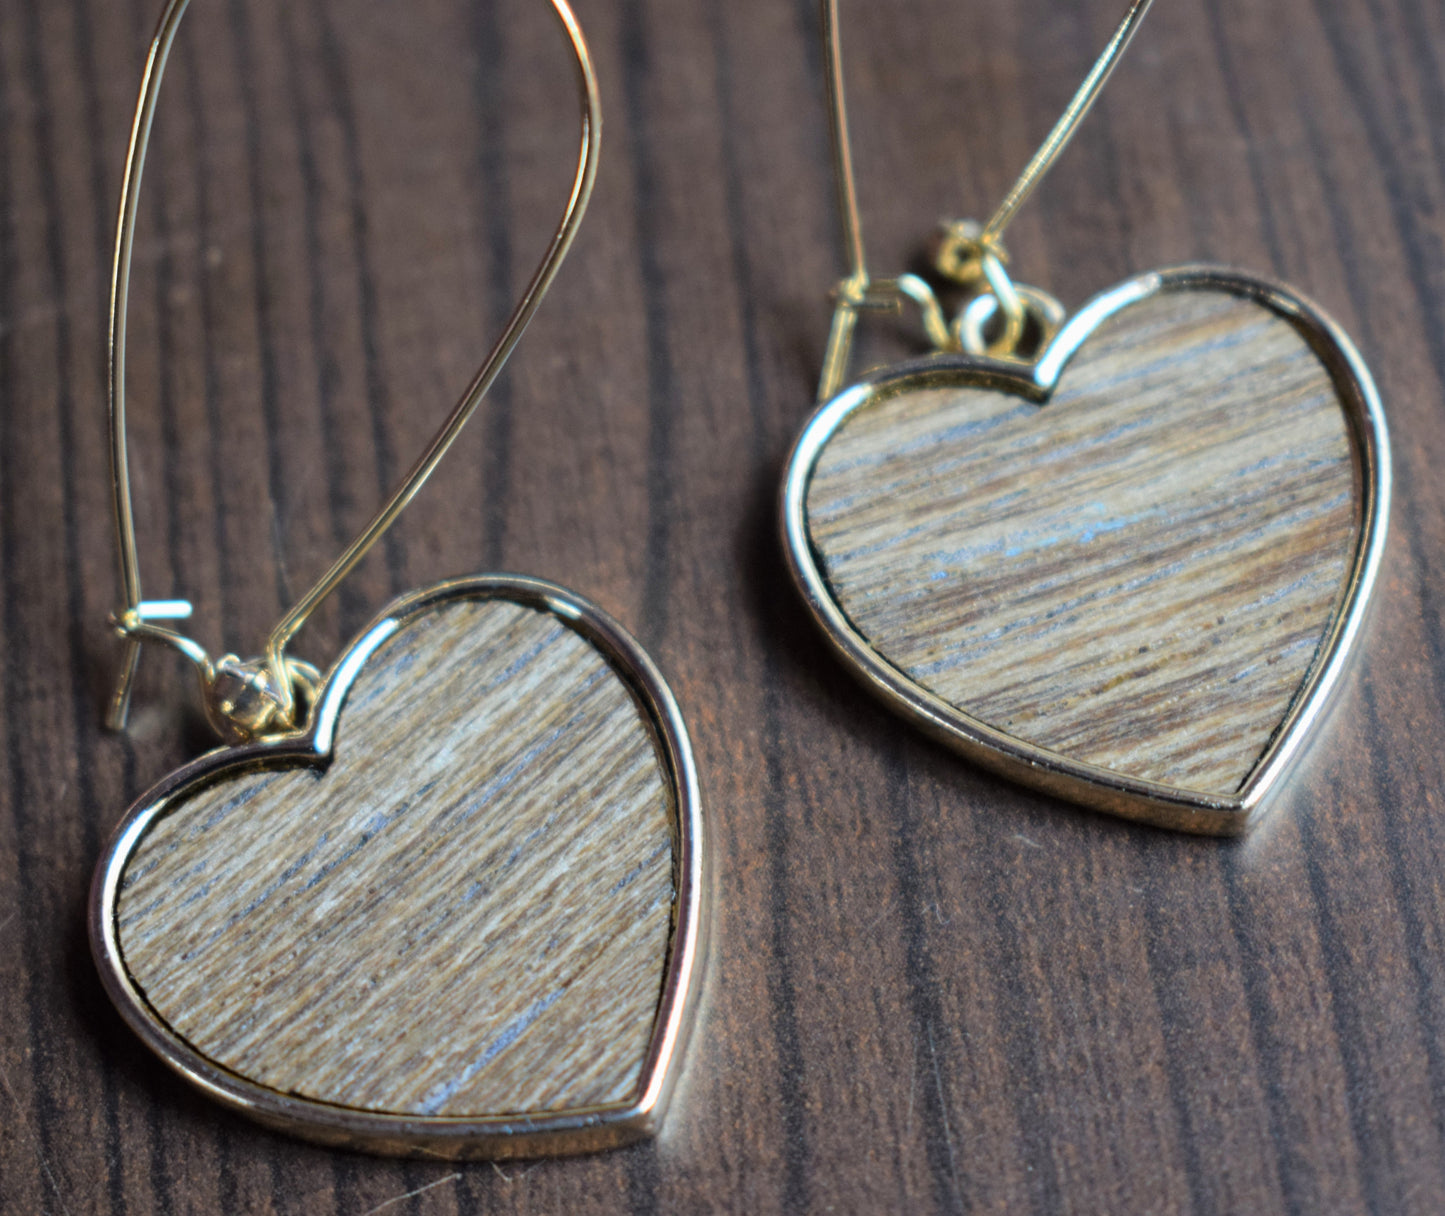 Wooden Heart Hook Earrings - GlitterGleam